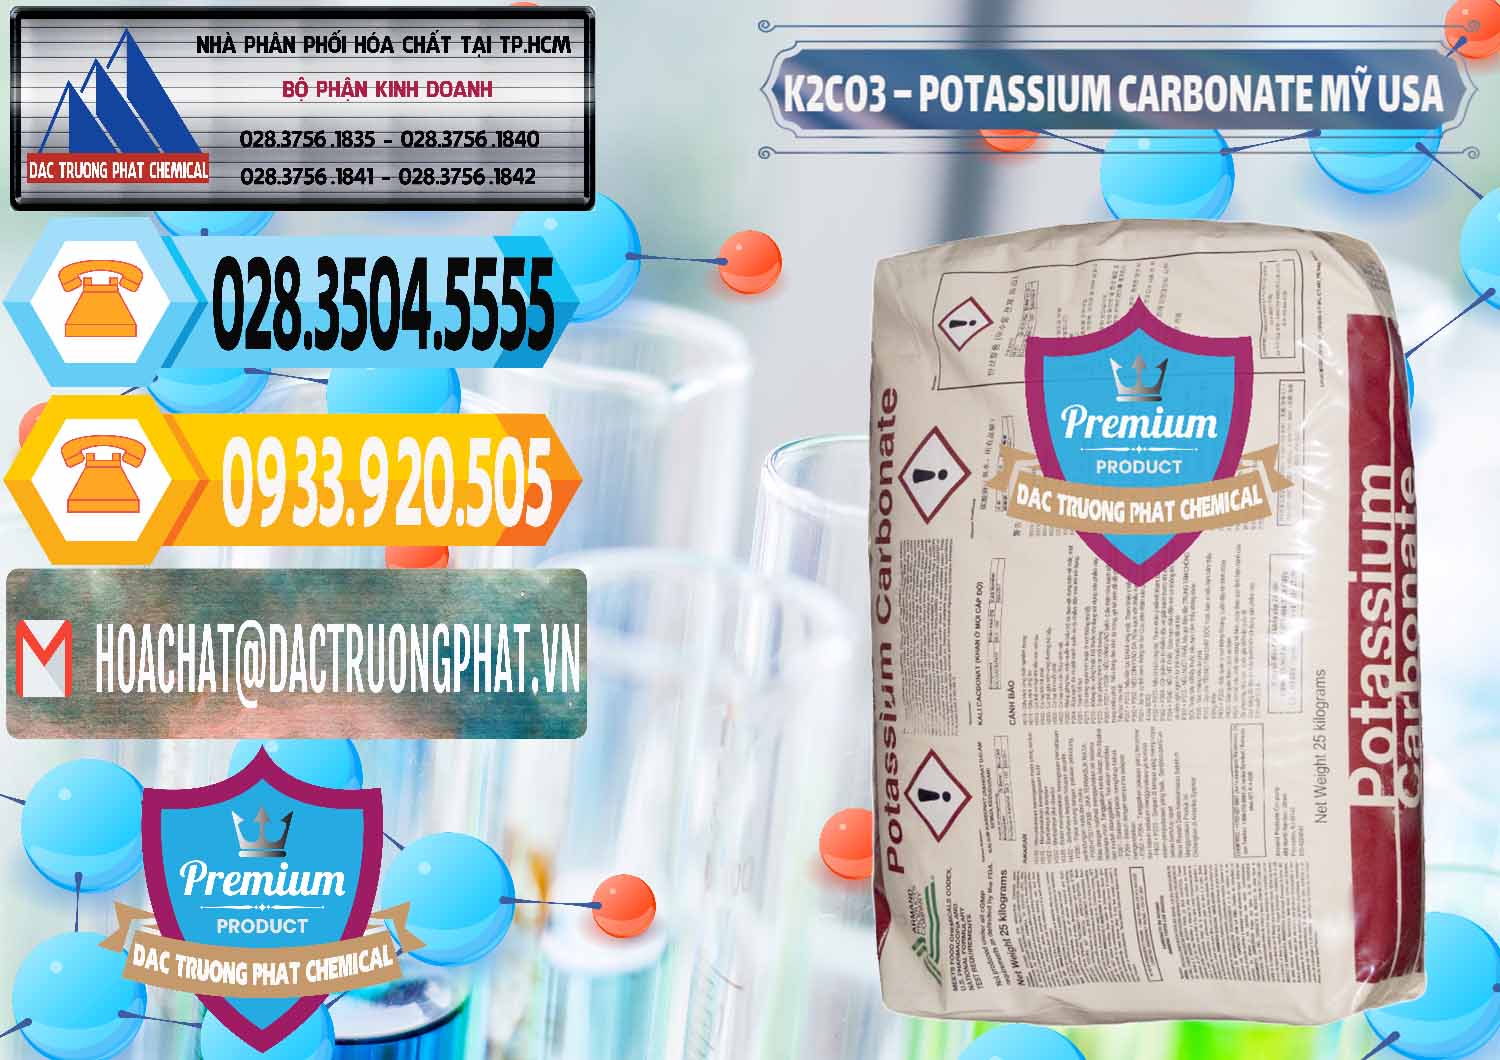 Nhà cung ứng _ bán K2Co3 – Potassium Carbonate Mỹ USA - 0082 - Công ty phân phối _ cung cấp hóa chất tại TP.HCM - hoachattayrua.net